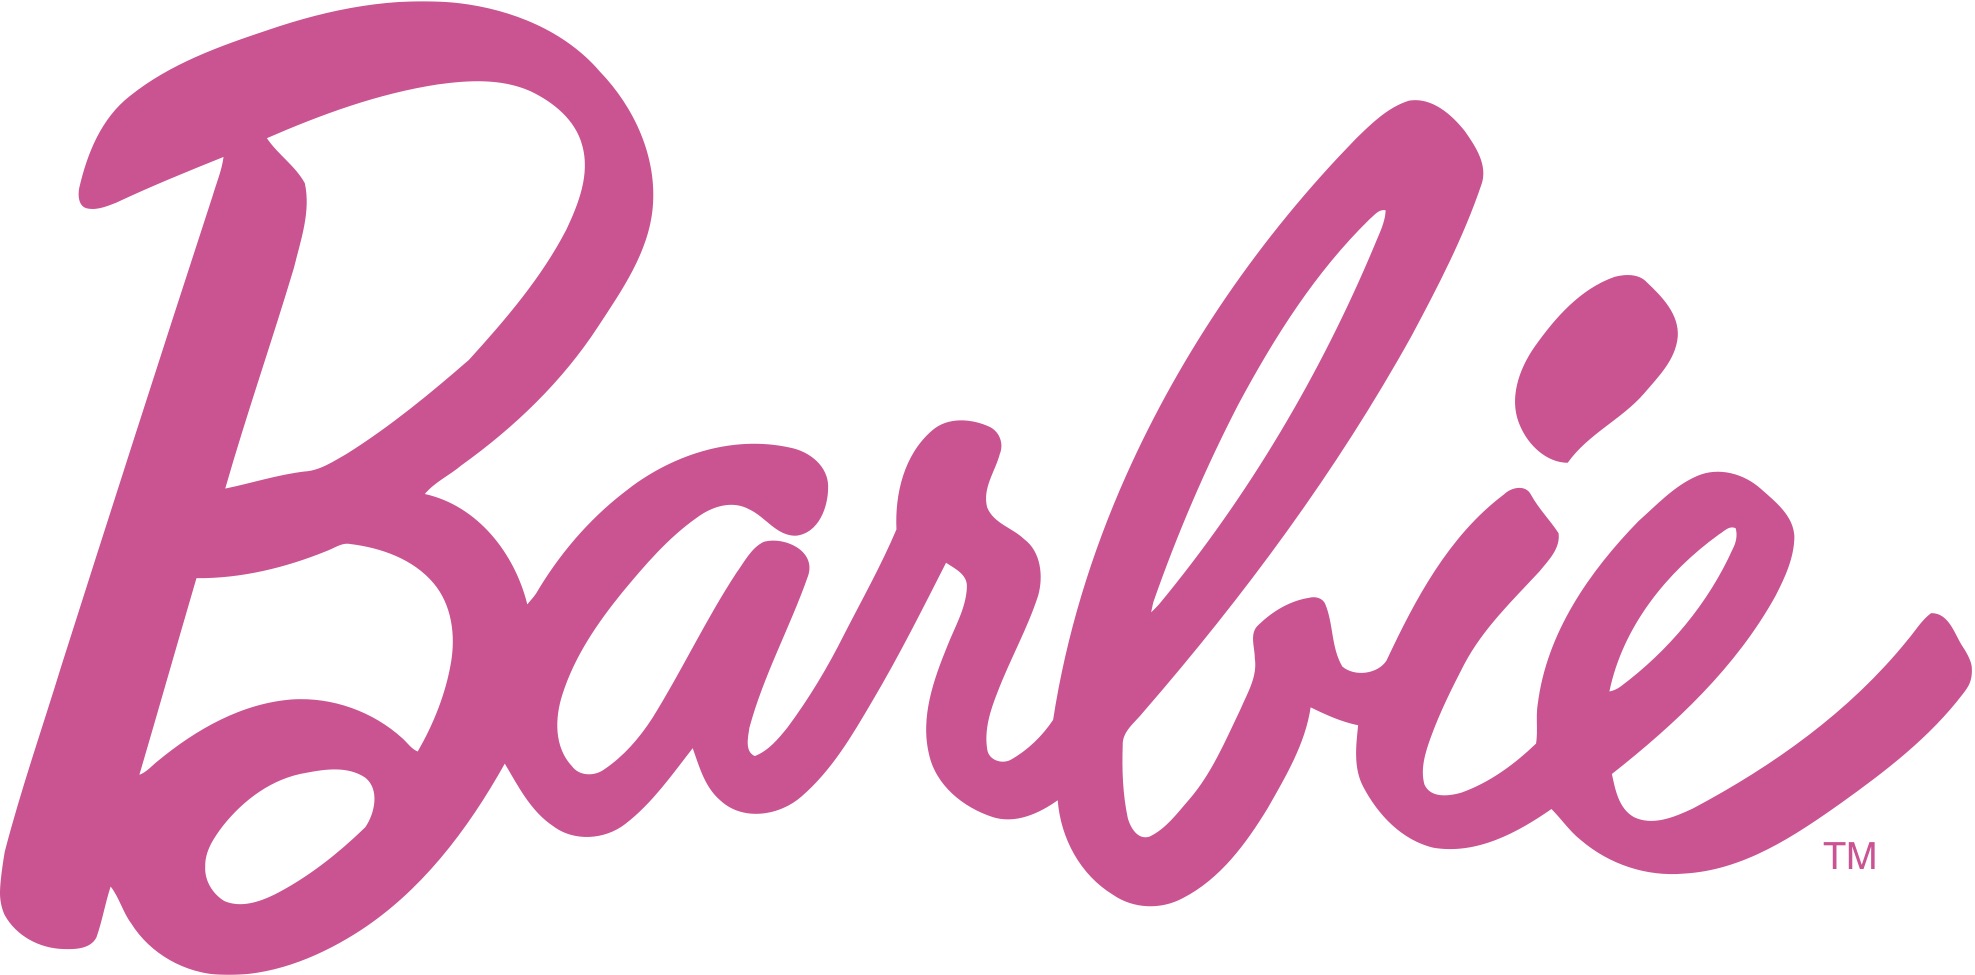 El logotipo de Barbie evoluciono desde su creación, pero mantiene ciertas características como el estilo manuscrito, minimalista y rosa.